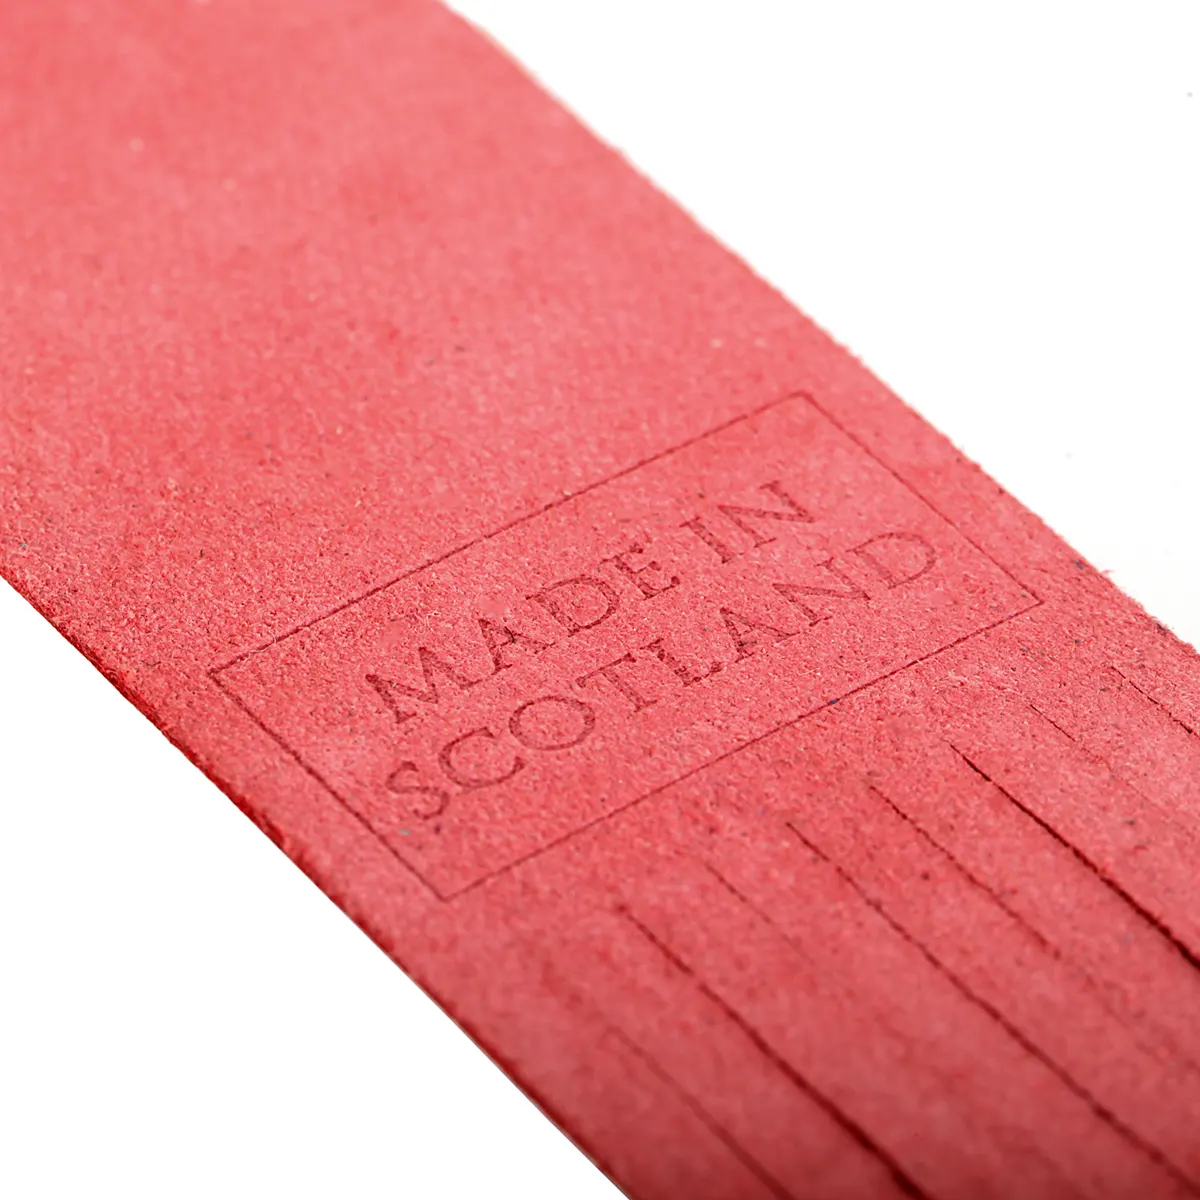 Islay - Lesezeichen aus Leder in Rot - Made in Scotland